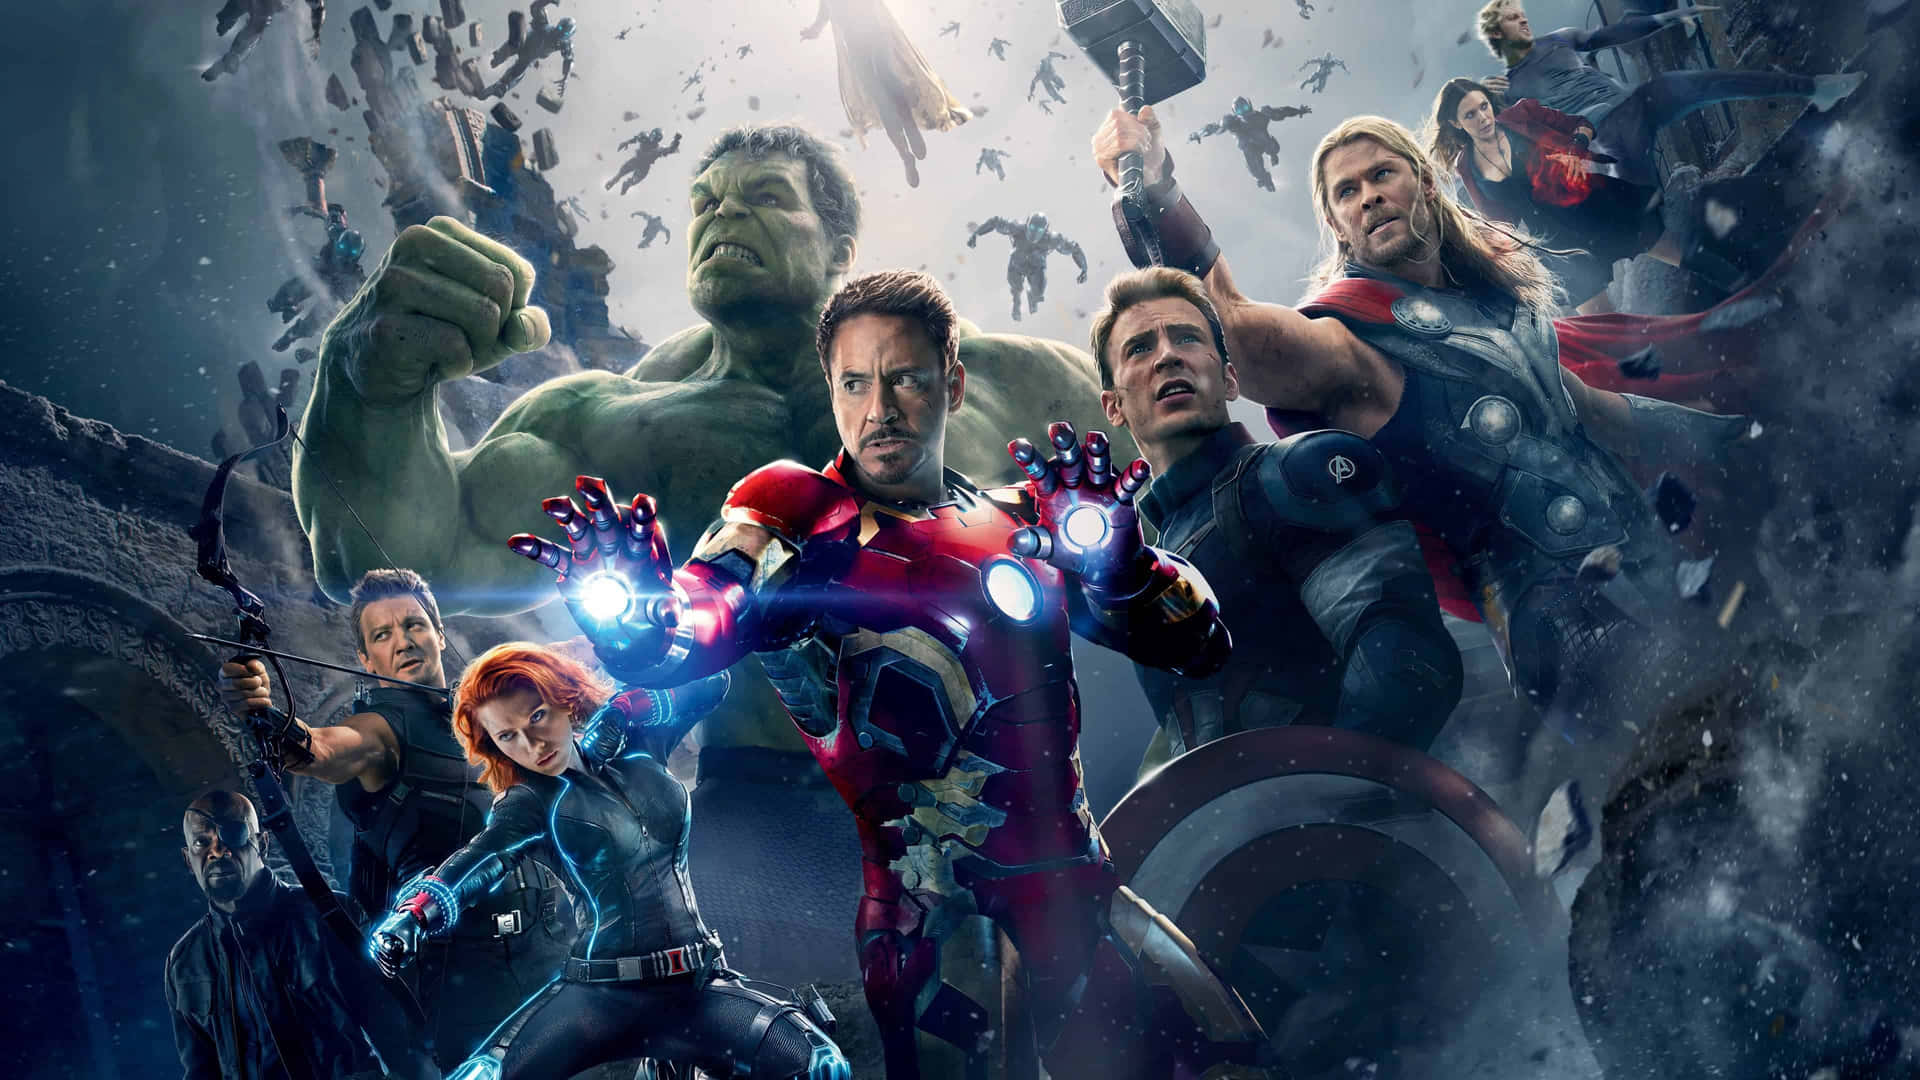 Marvel's Avengers unite in a 4k adventure